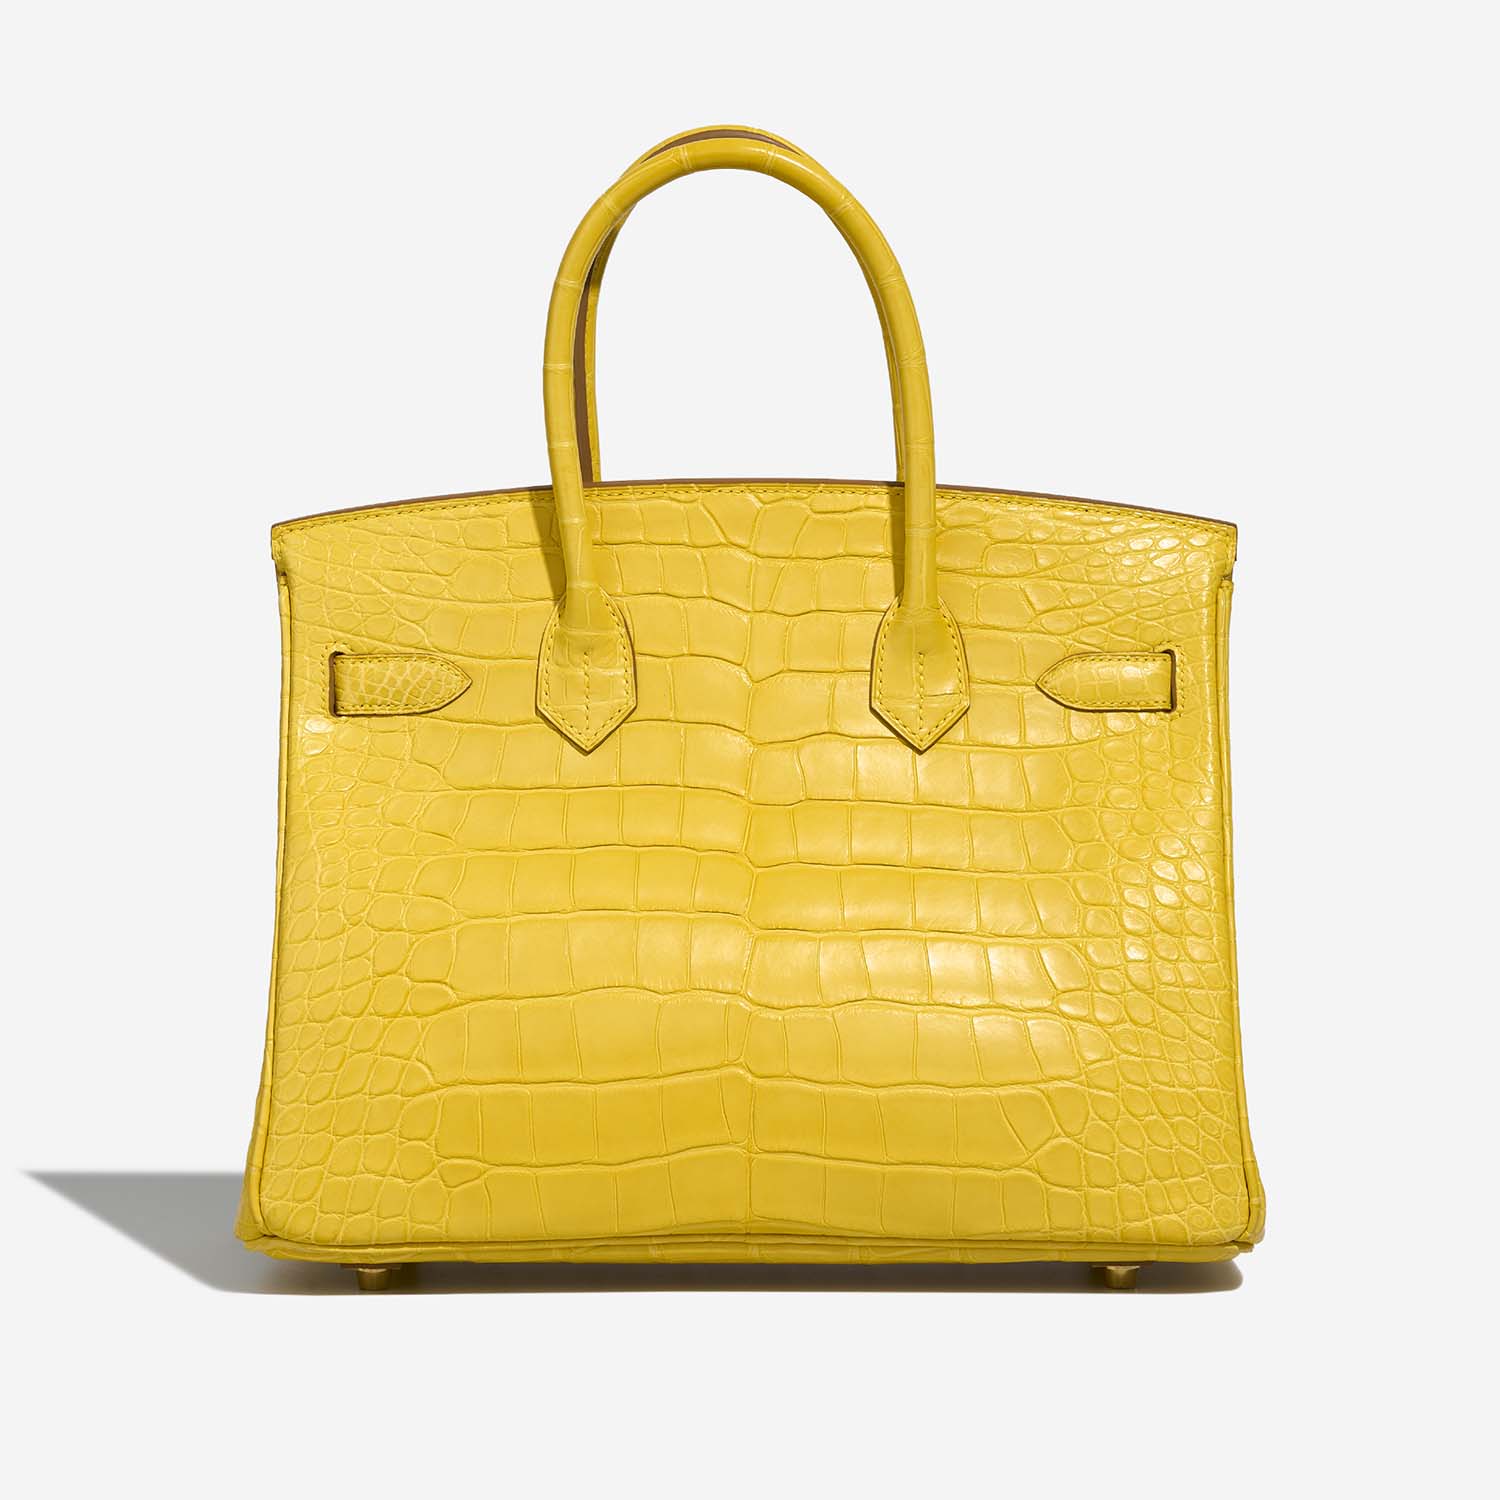 Hermès Birkin 30 Mimosa Back | Verkaufen Sie Ihre Designertasche auf Saclab.com